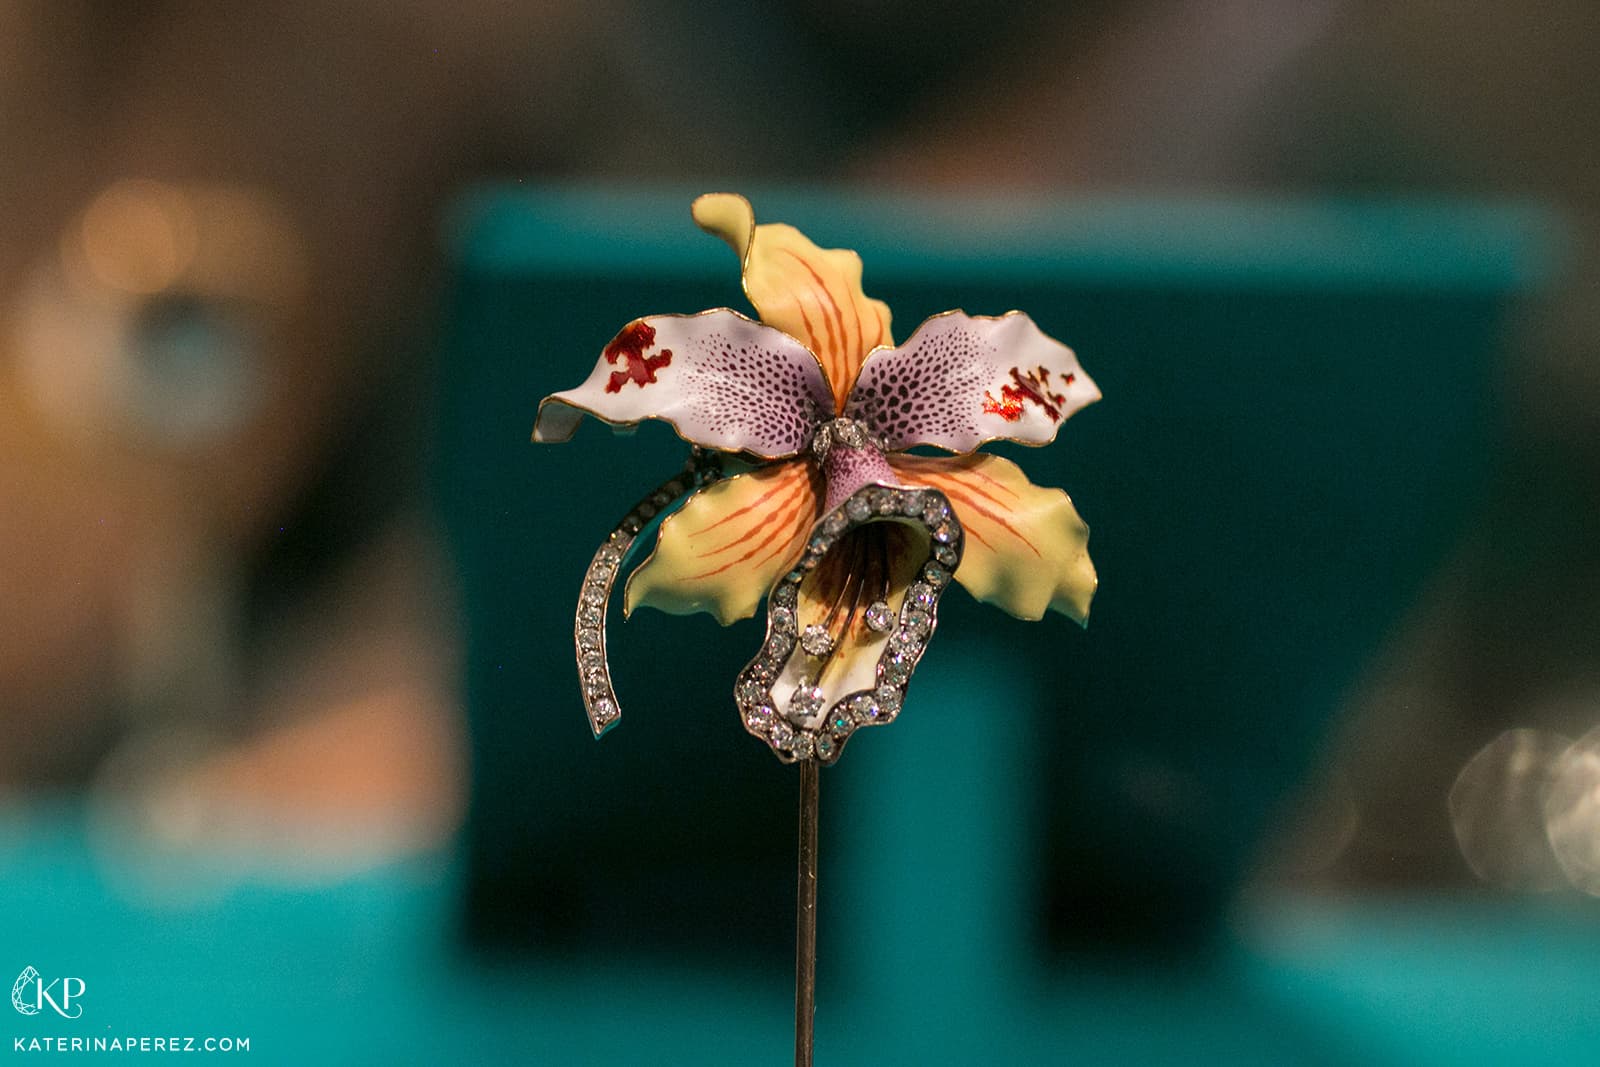 Брошь "Орхидея" с эмалью и бриллиантами. Западная Европа, конец 17 века